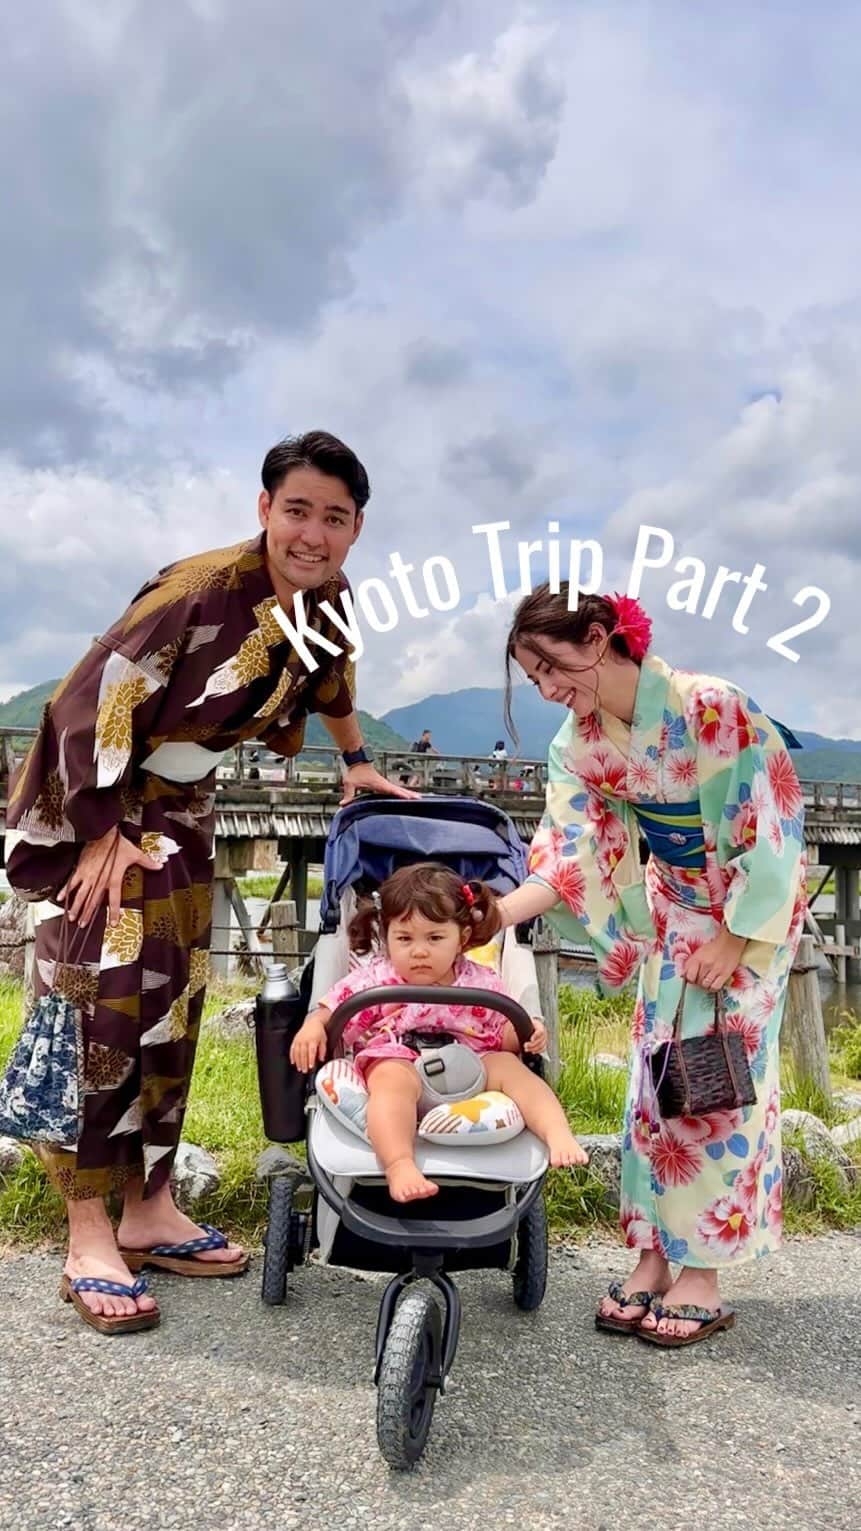 ノウィキ茉莉のインスタグラム：「Part 2 of our Kyoto Trip!  Super exciting to wear Kimonos and walk around😆  京都旅行の動画part2です✌️ 渡月橋と嵐山でお散歩してきました🧡  着物を着て歩くのが新鮮でした♪  ご覧ください〜😊 Part 3もお楽しみに〜  #1yearold #1歳 #kyototrip #子連れ旅行 #igbaby #子連れおでかけ #vacation #trip #京都旅行 #嵐山 #渡月橋 #kimono #familyvacation」